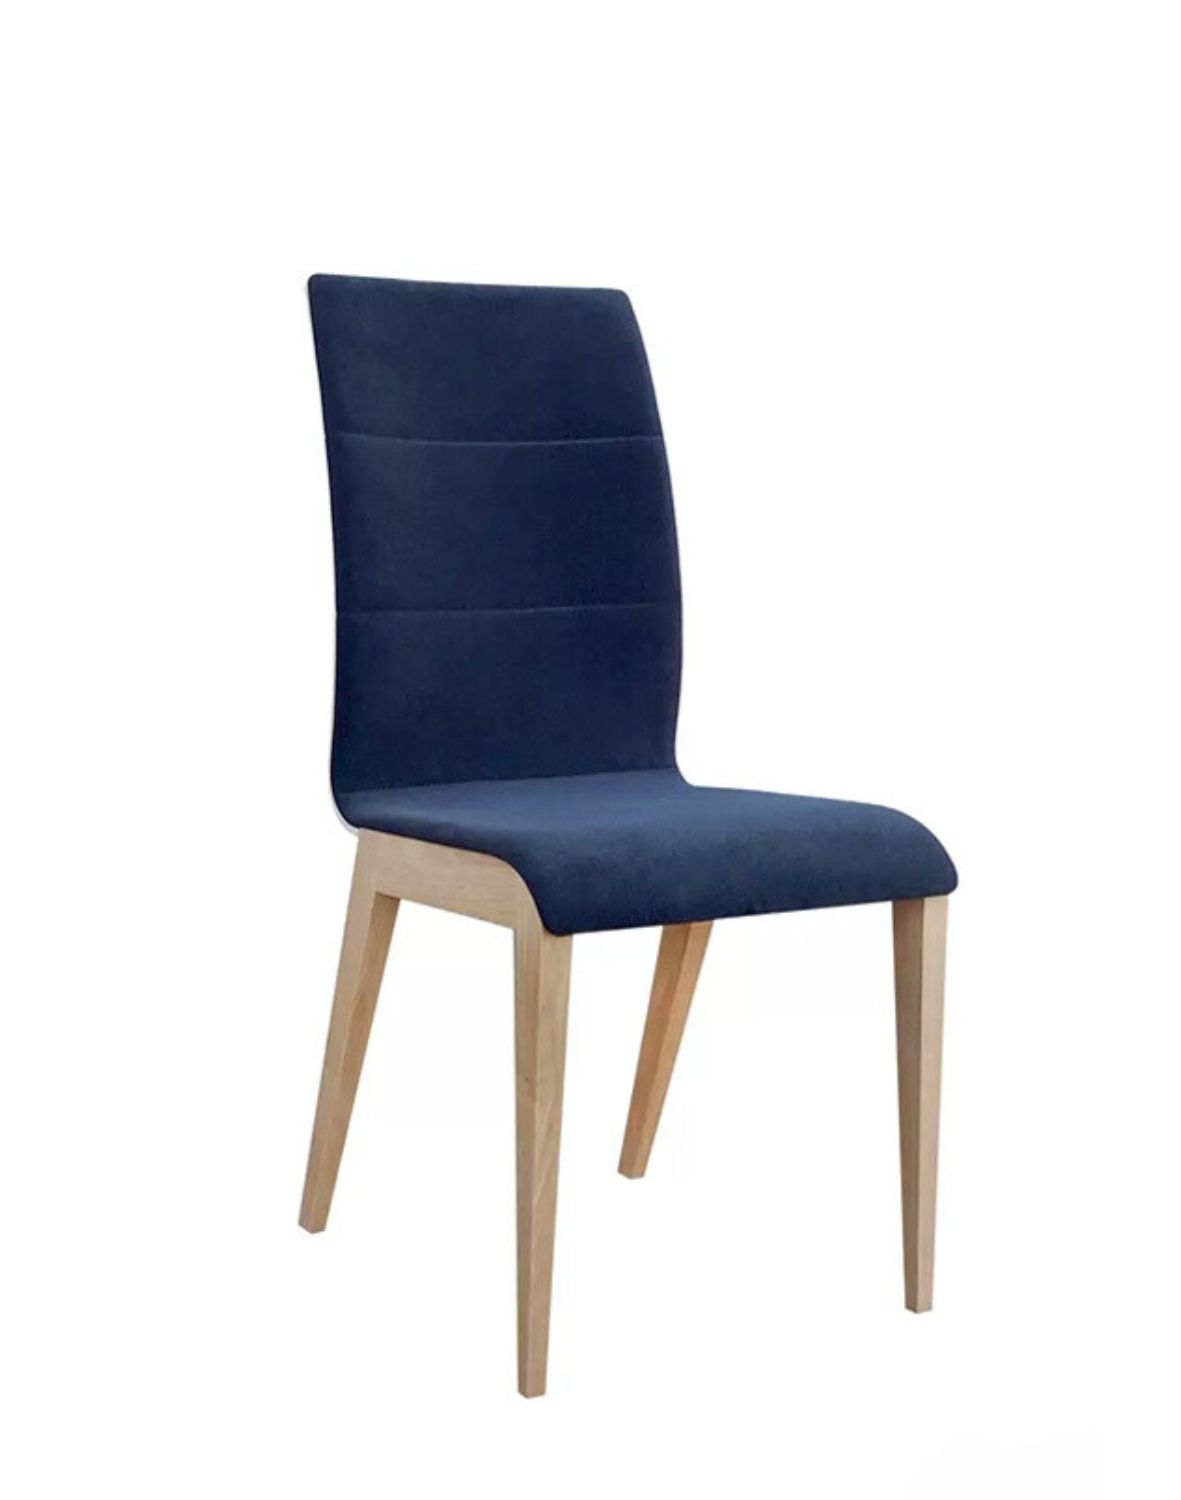 Krzesło Quadro